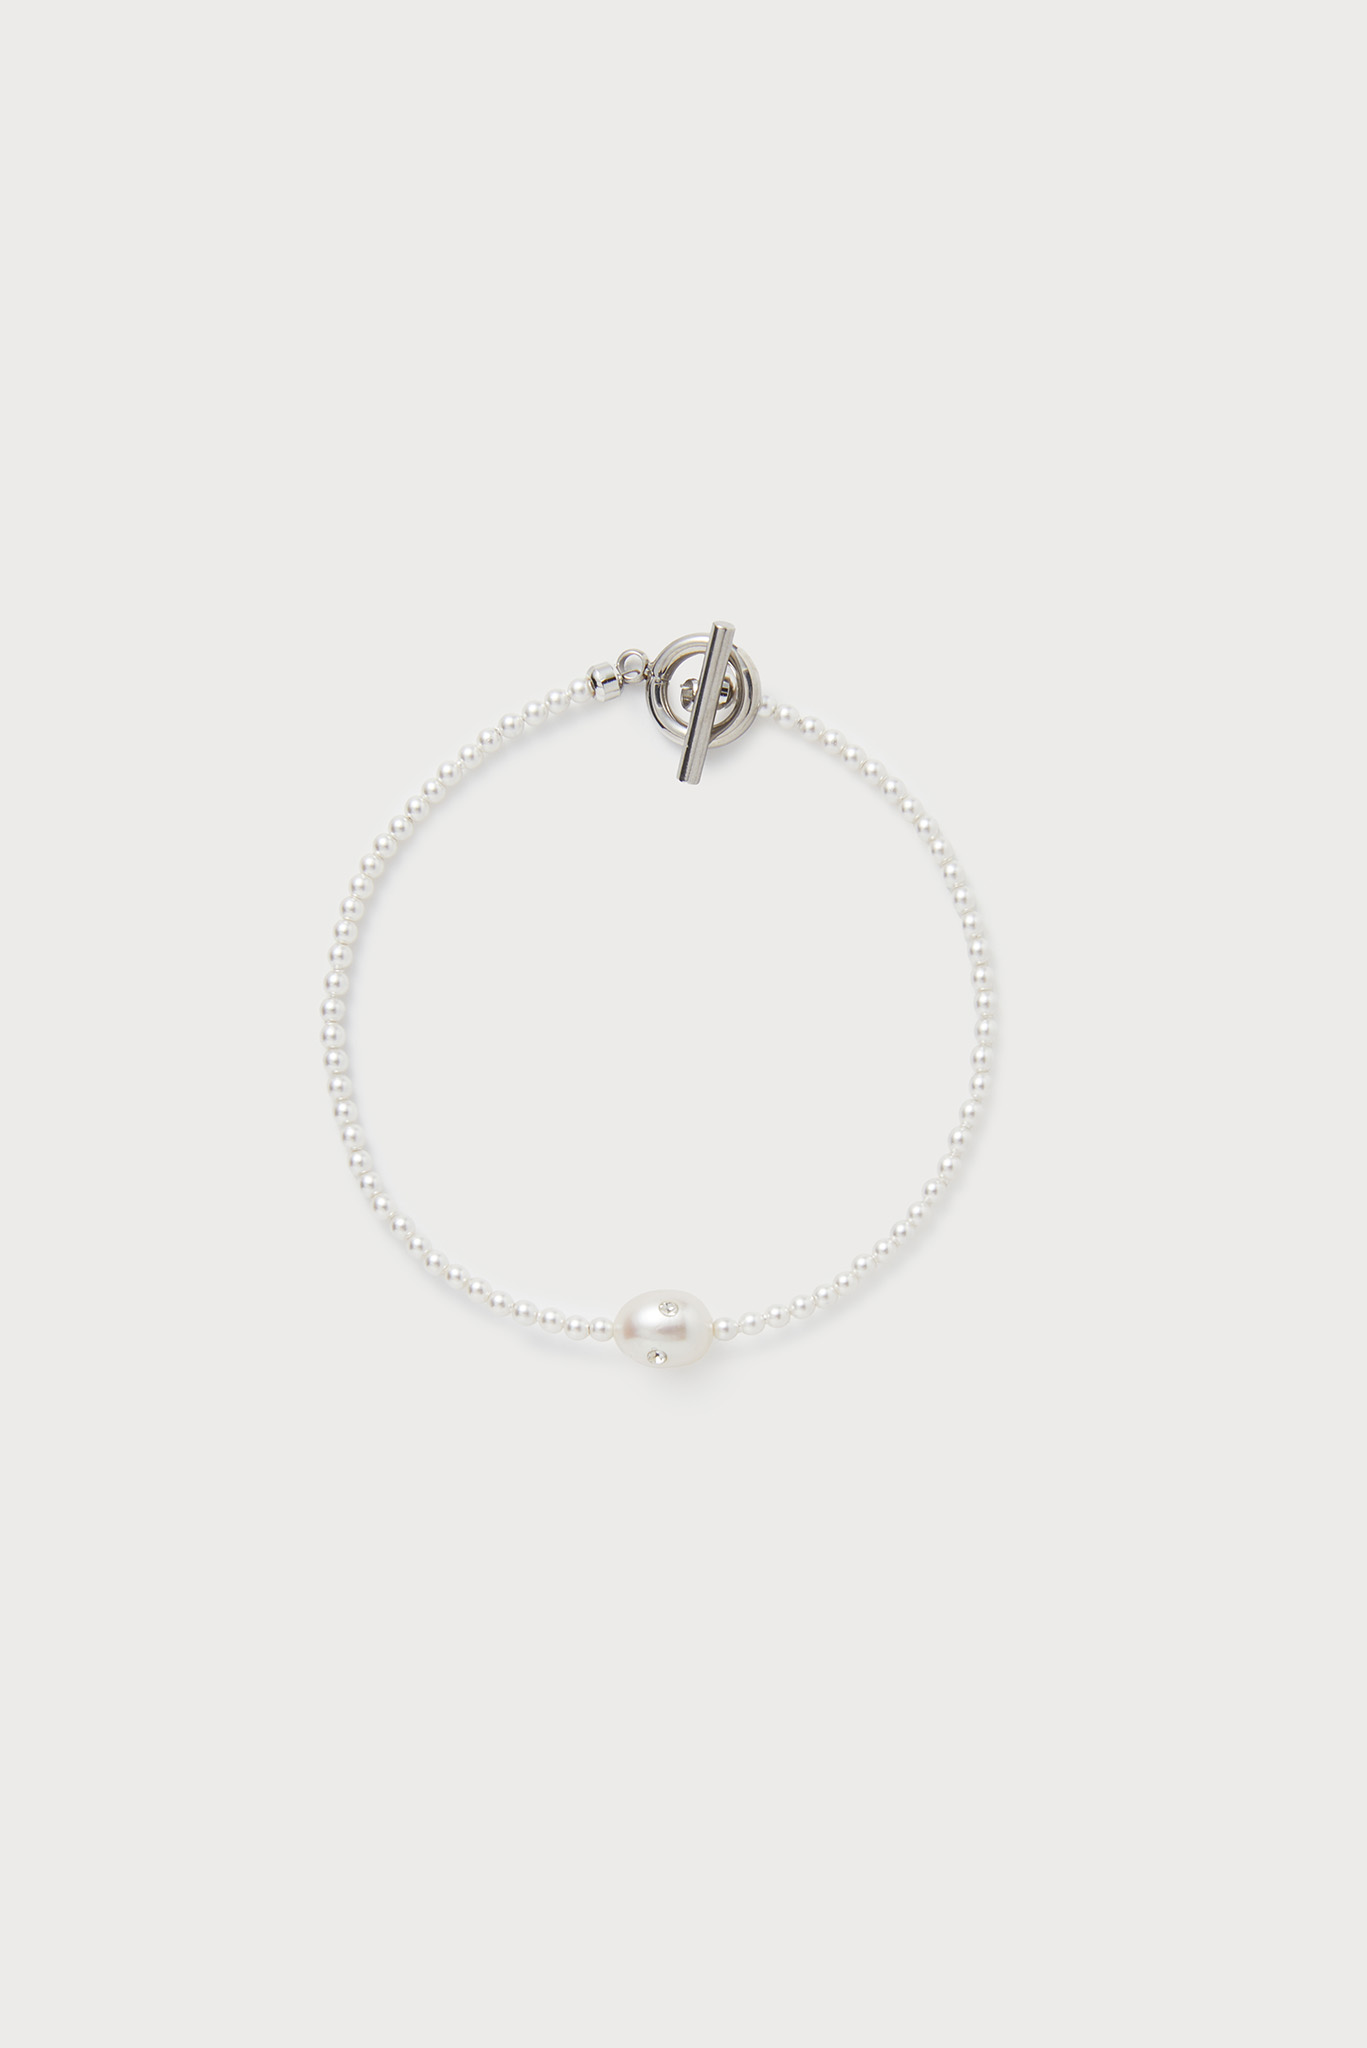 Ashore Bracelet, Petite Pearl